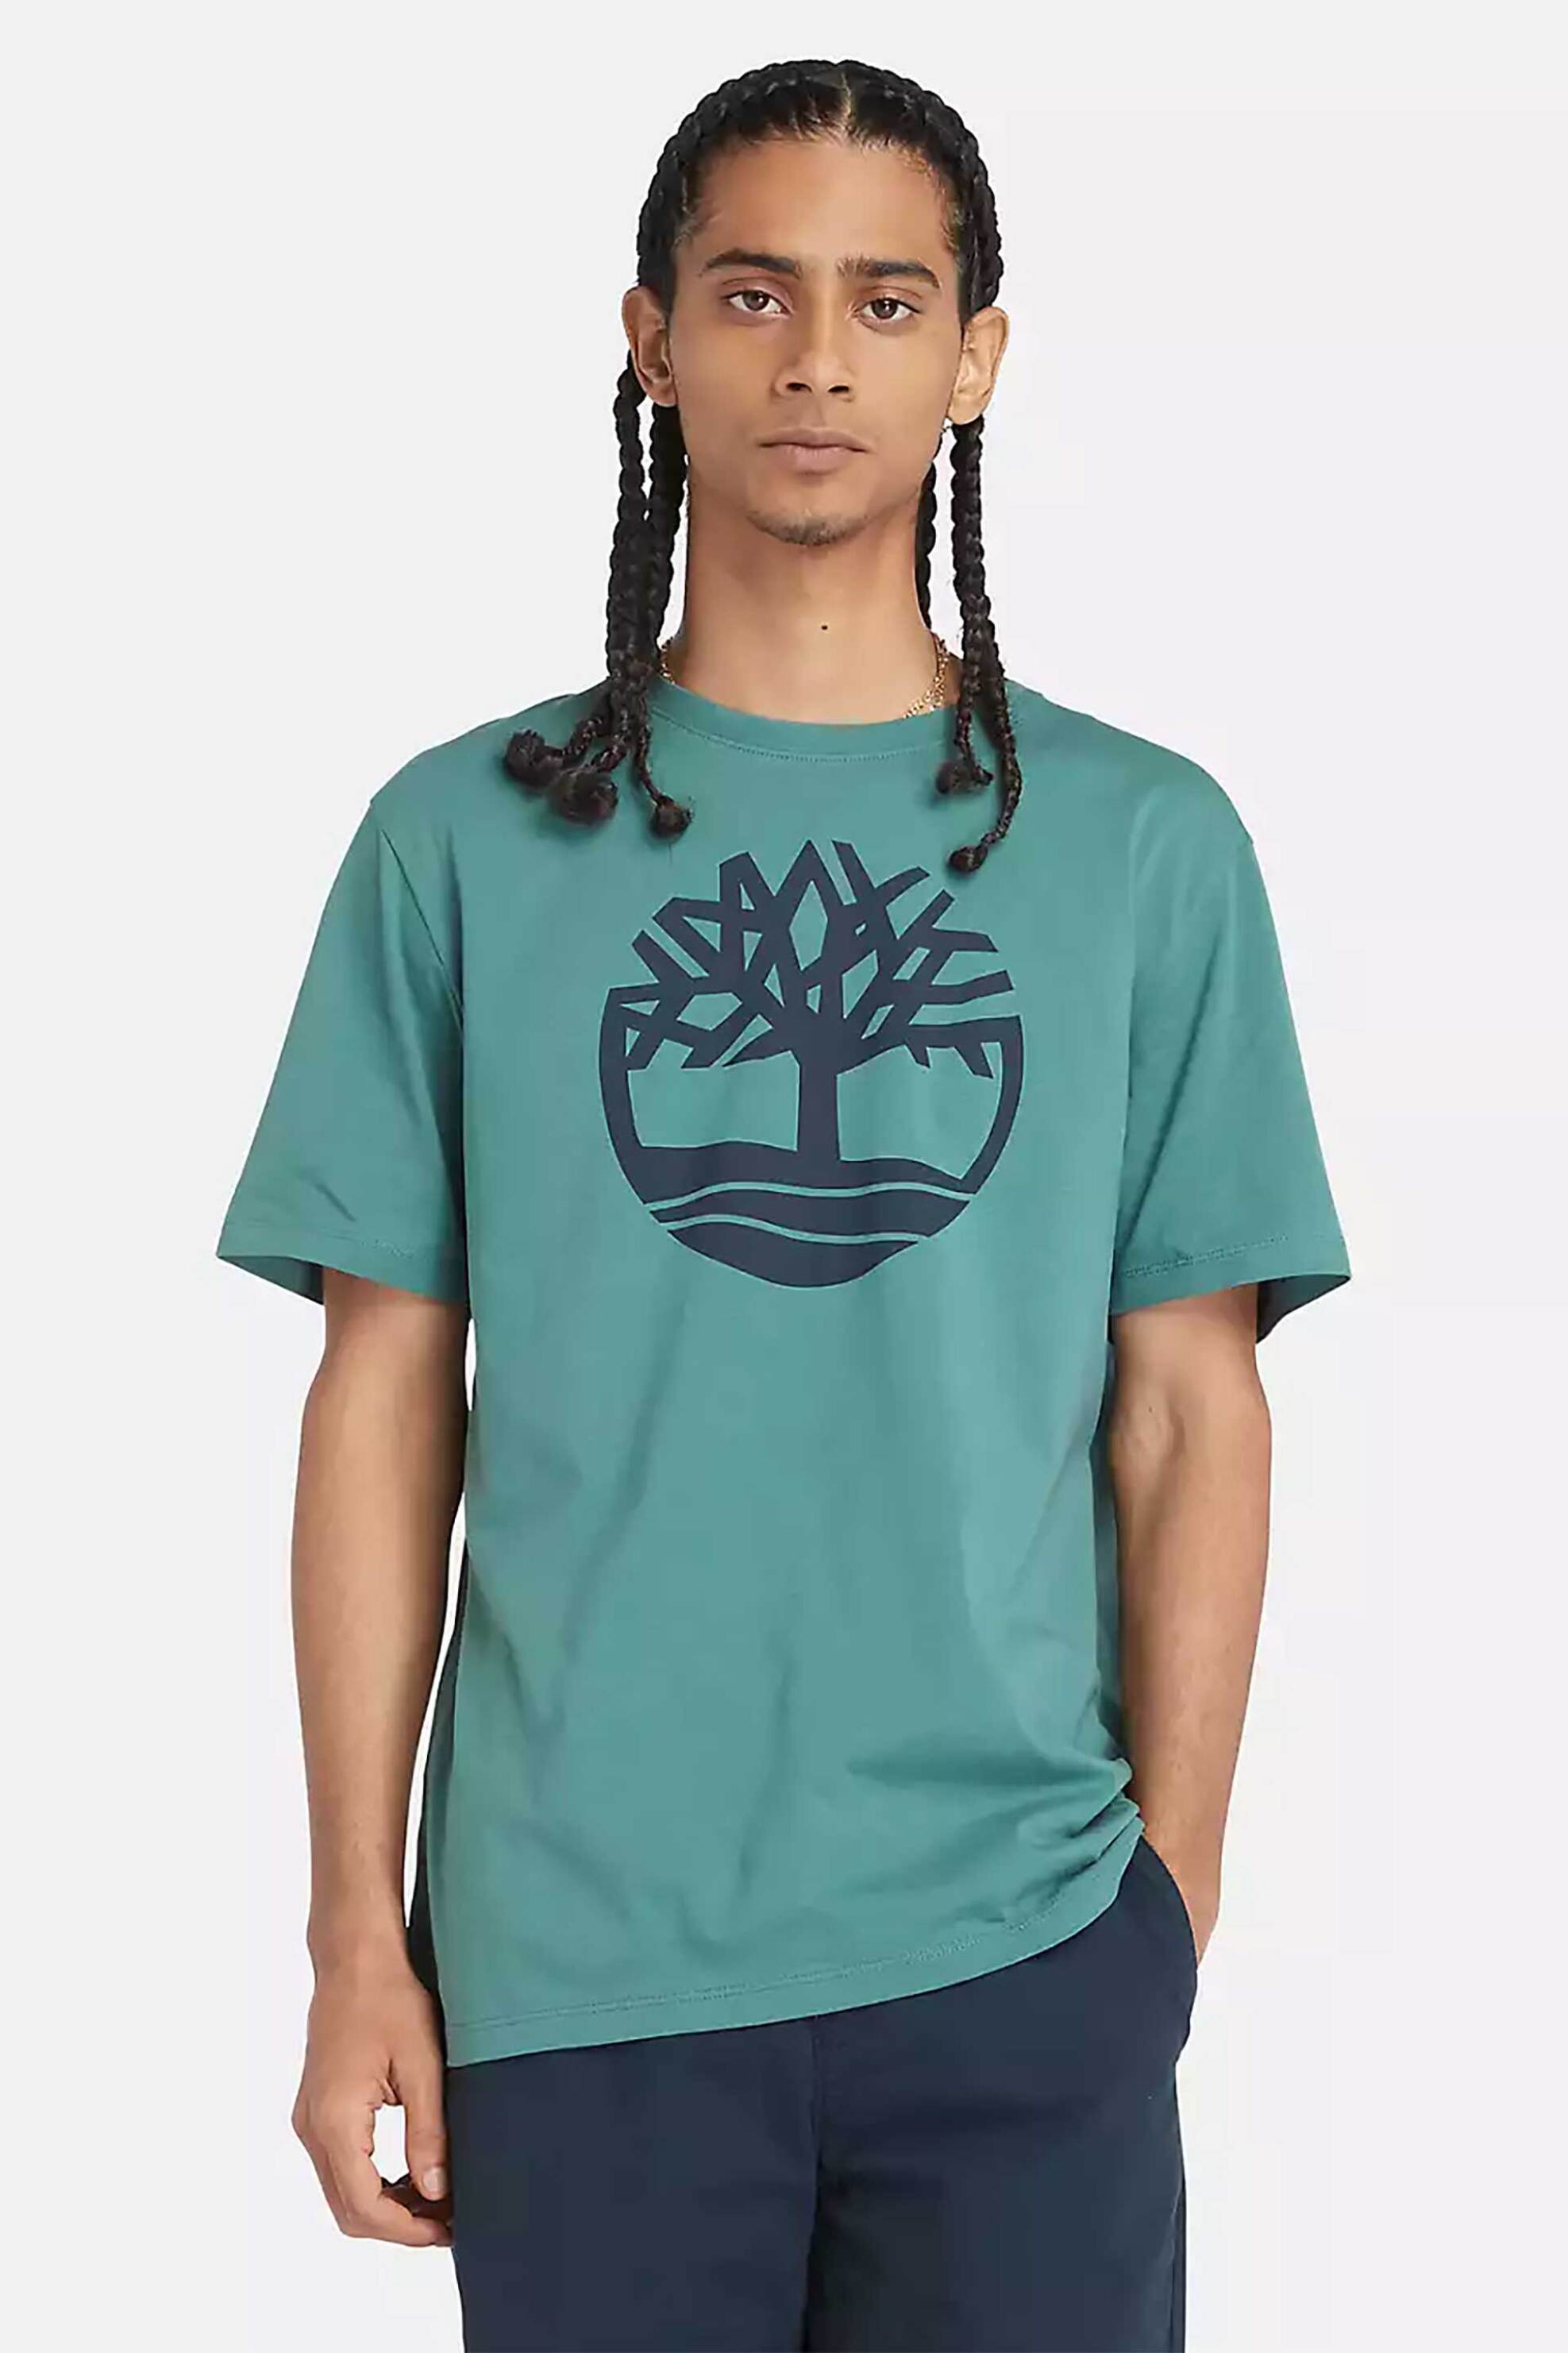 Ανδρική Μόδα > Ανδρικά Ρούχα > Ανδρικές Μπλούζες > Ανδρικά T-Shirts Timberland ανδρικό T-shirt με logo print Regular Fit "Kennebec River" - TB0A2C2RCL61 Πράσινο